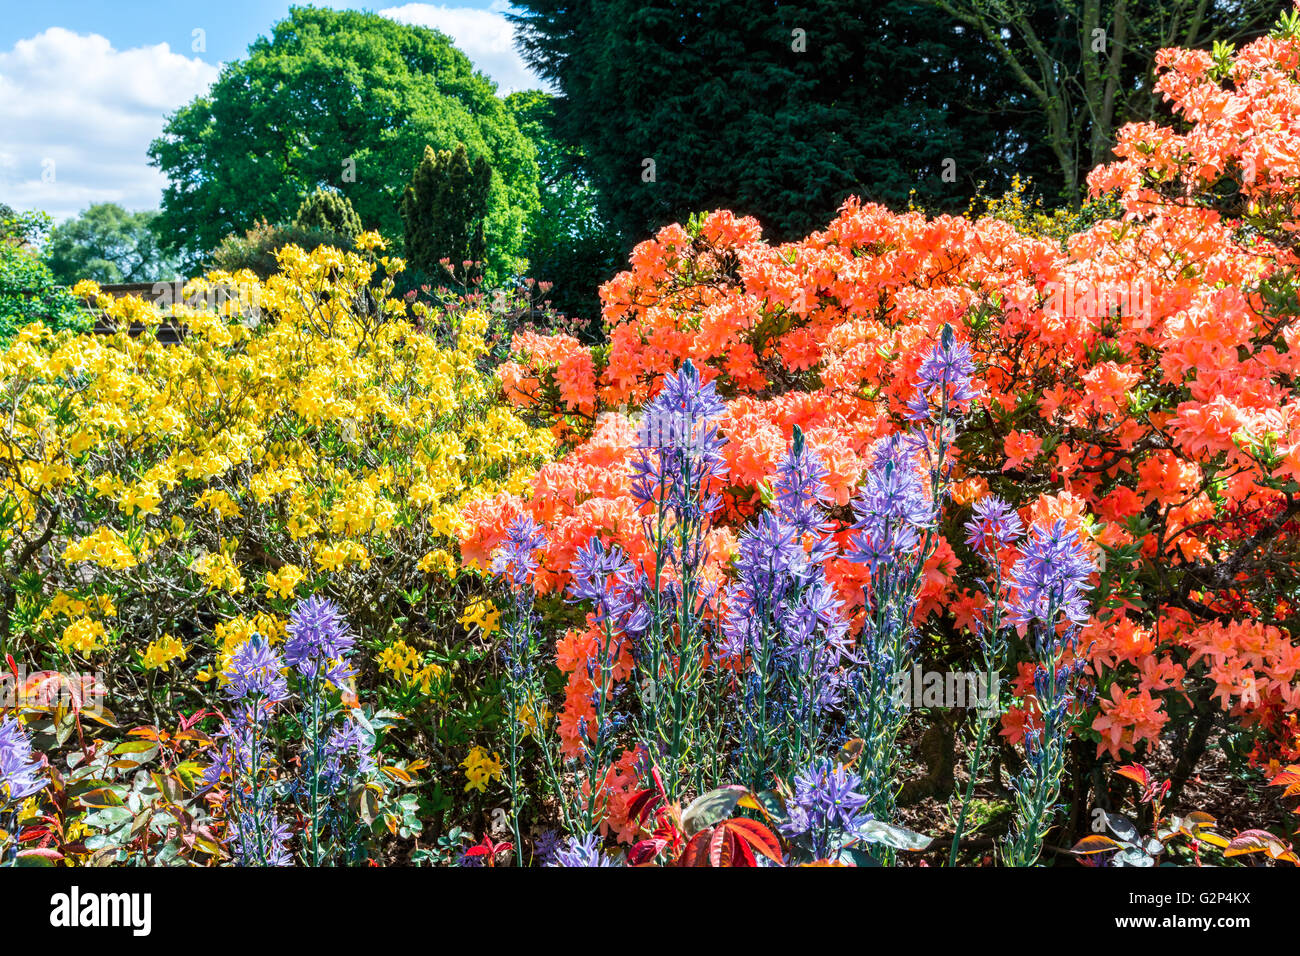 Blühende Pflanzen und Sträucher in einem englischen Garten. Stockfoto